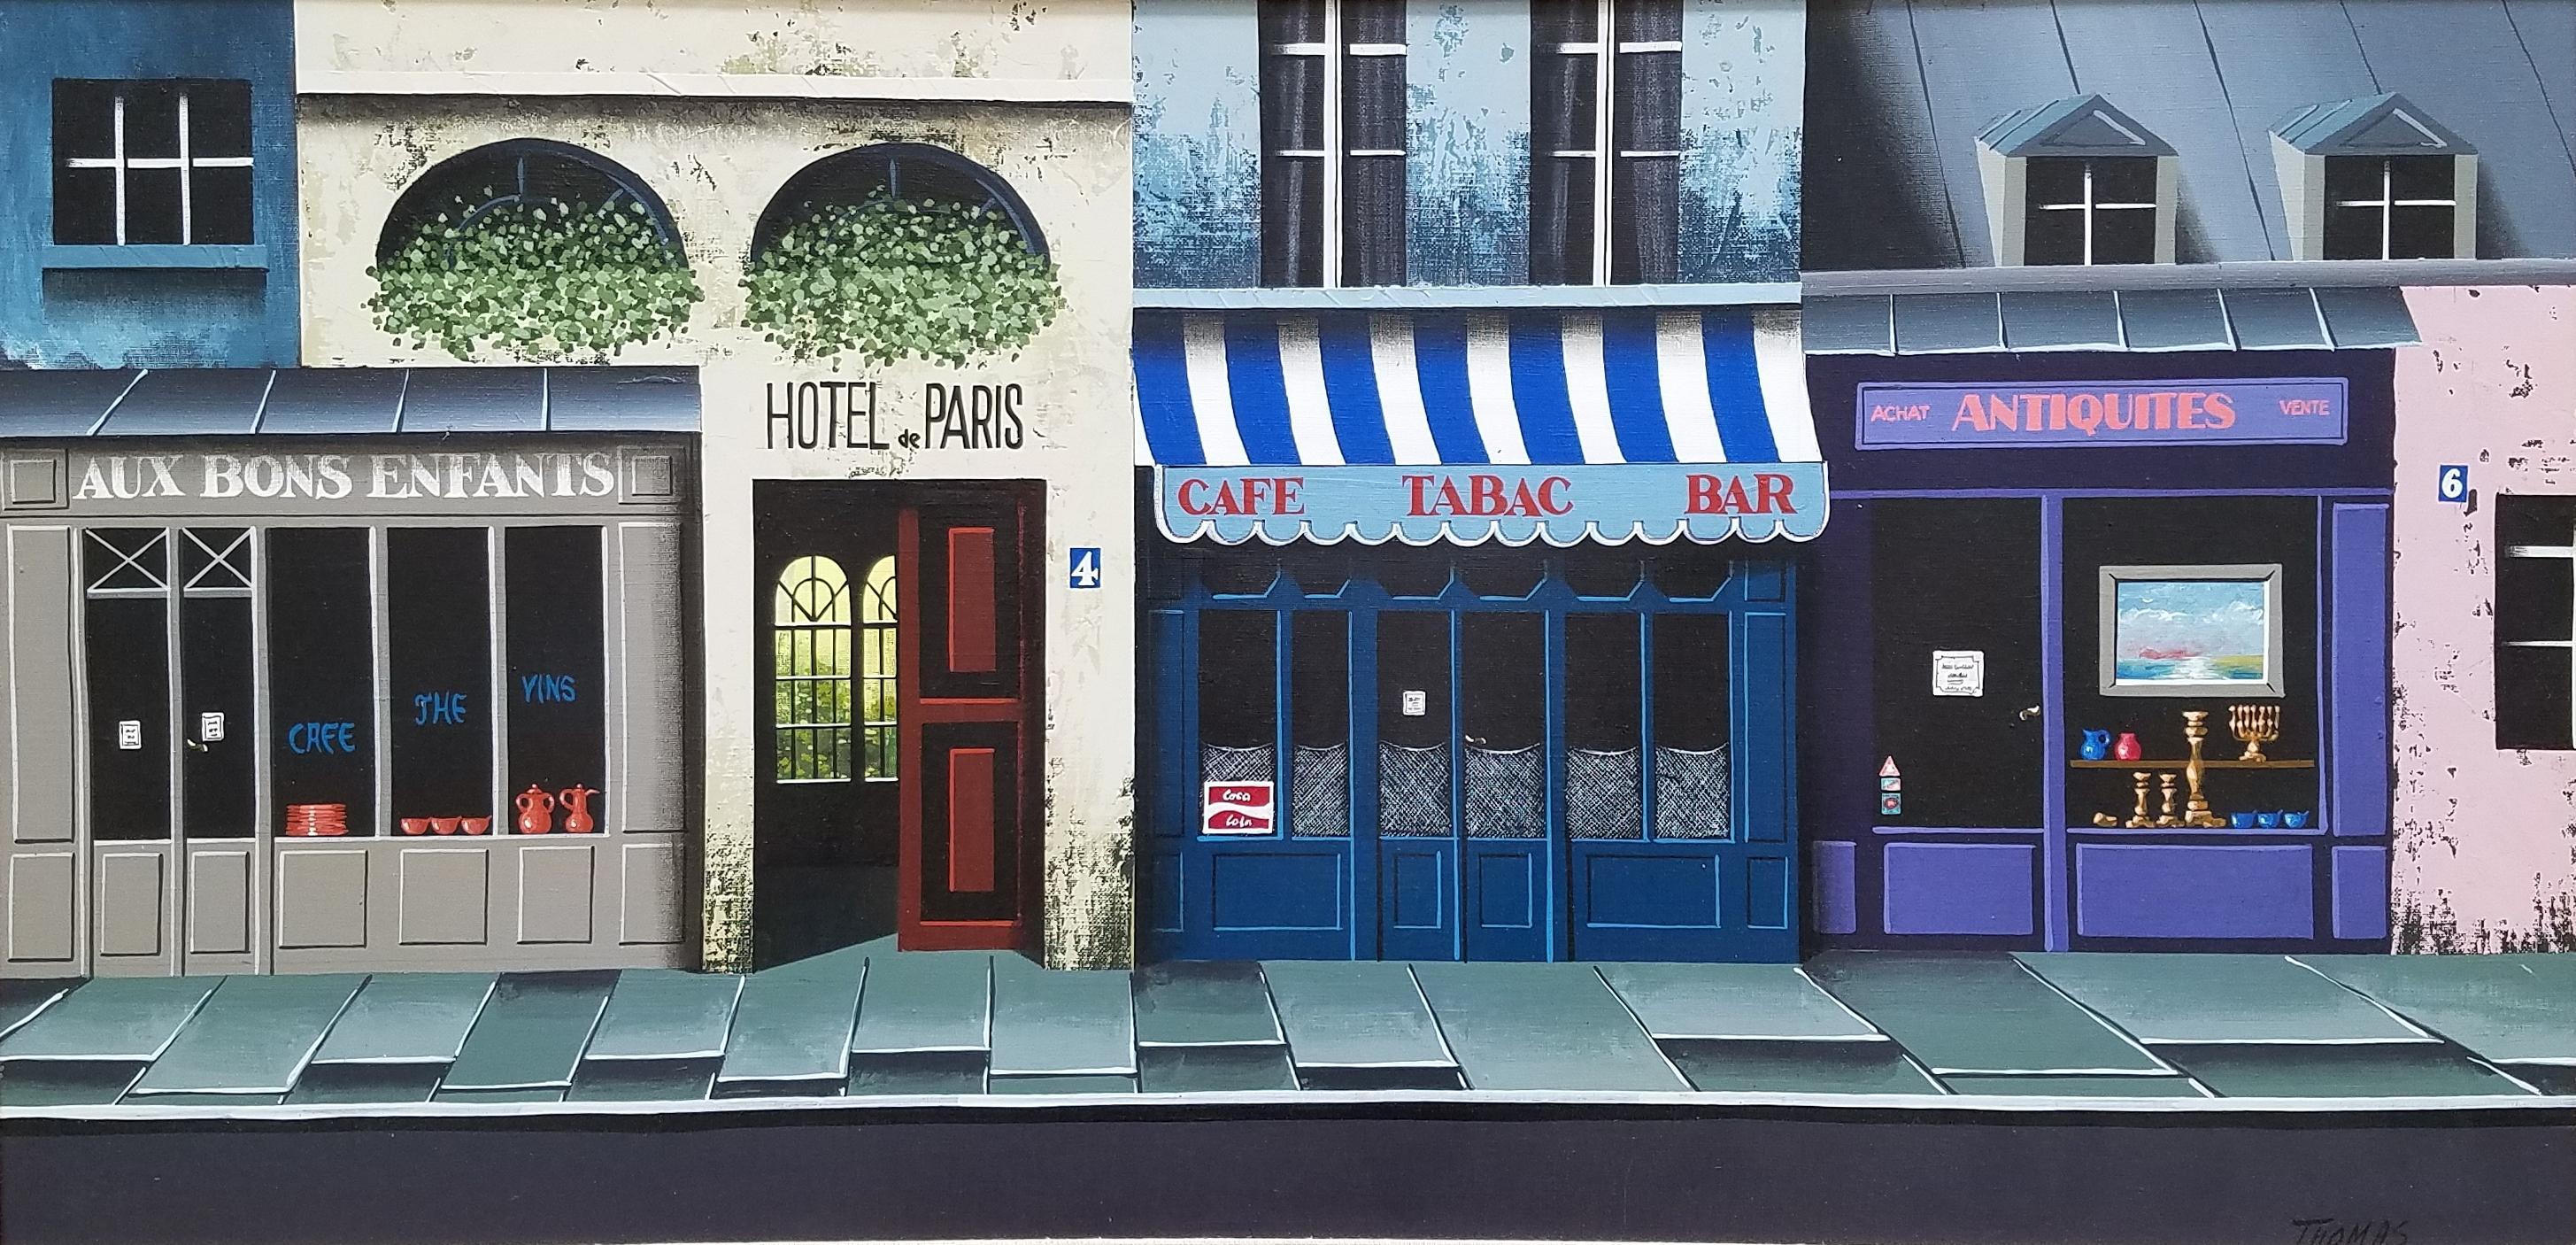 painter of paris street scenes 1883-1955